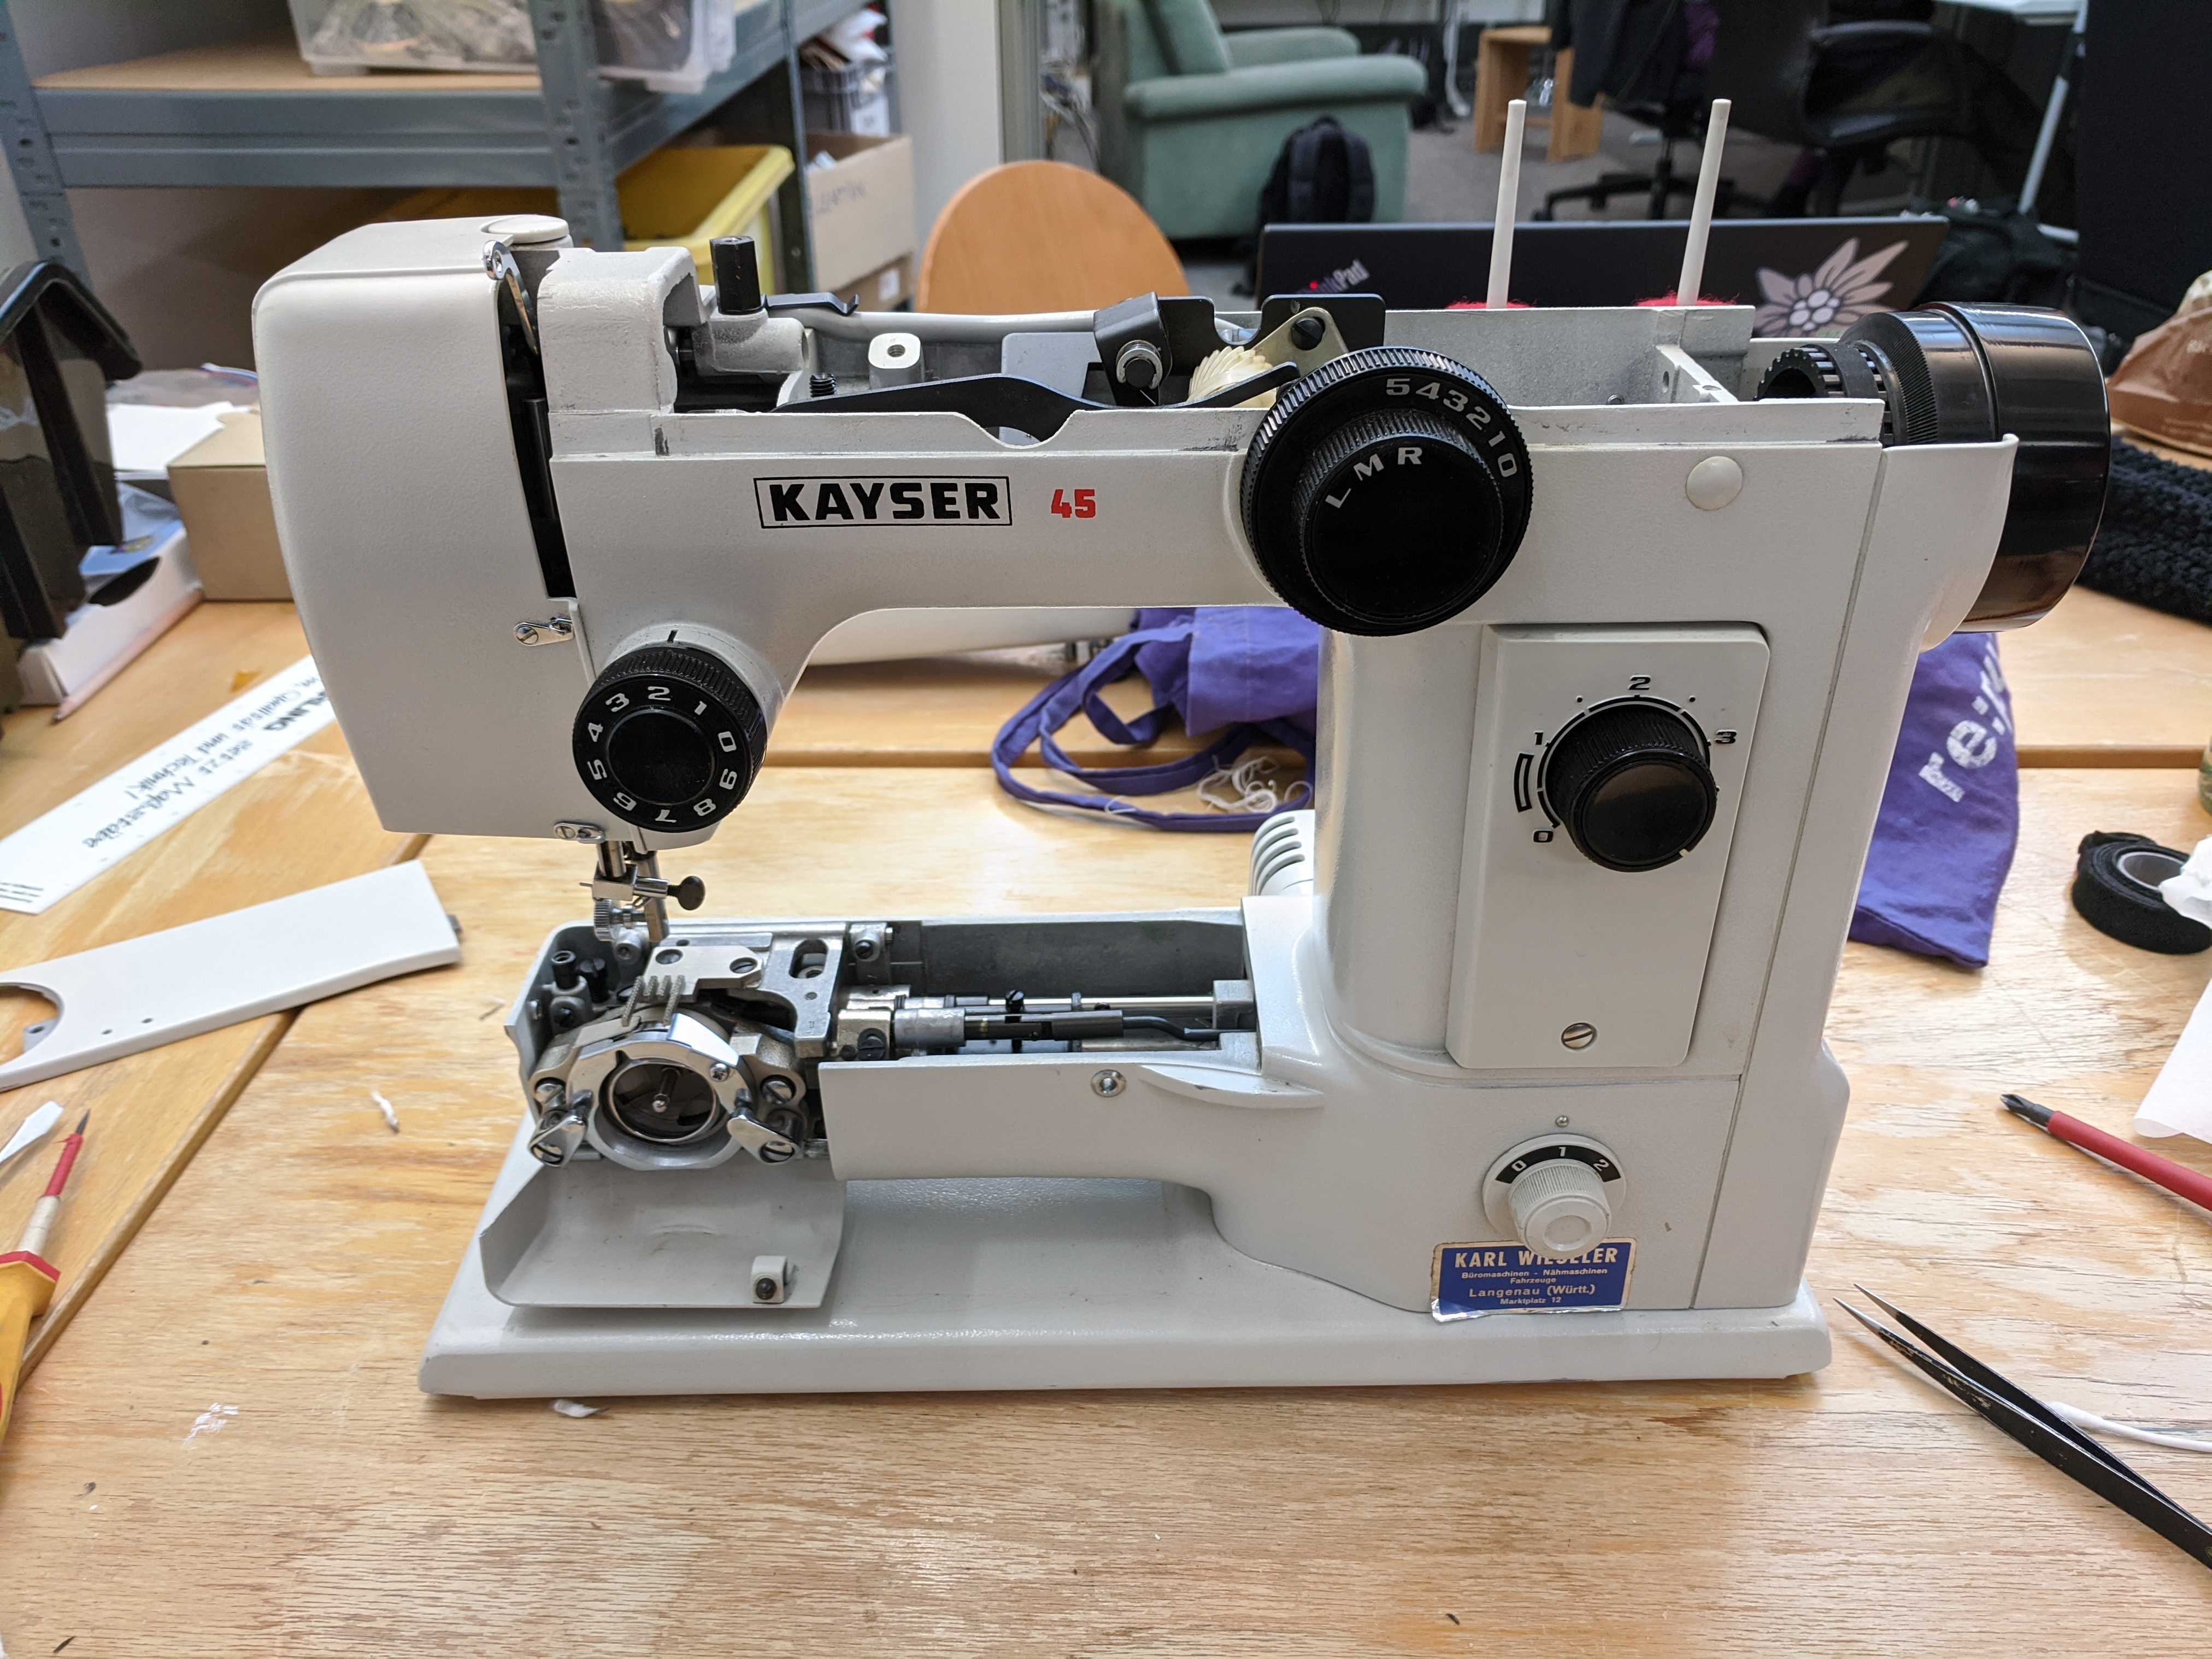 Die Kayser-Nähmaschine brauchte etwas mehr Liebe